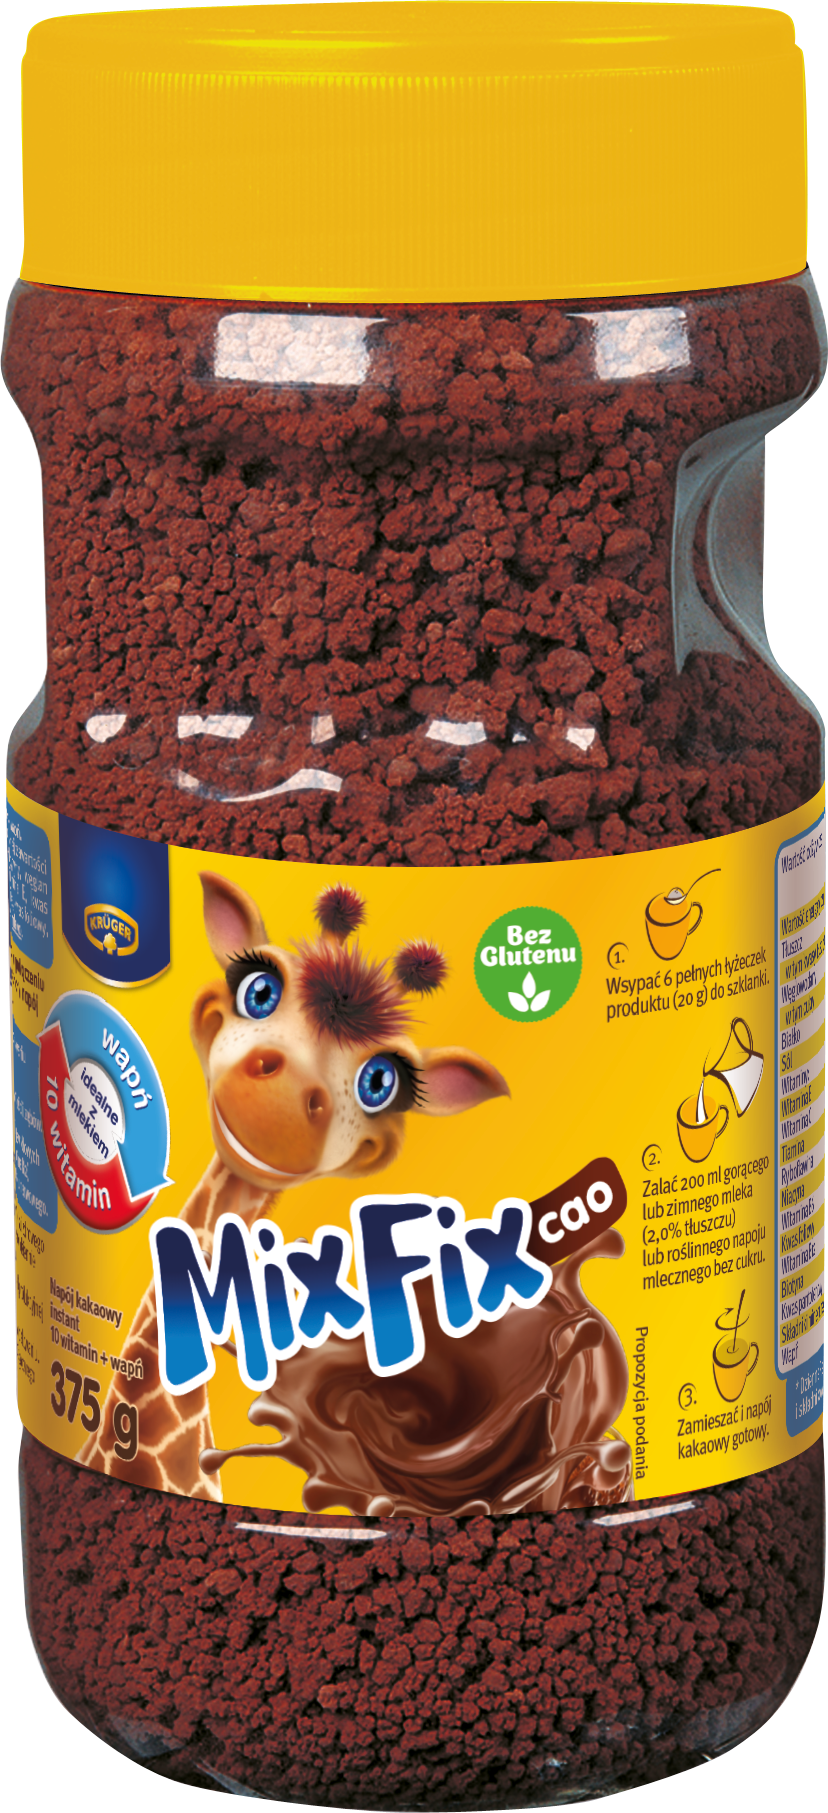 Mix Fix Cao Napój kakaowy instant